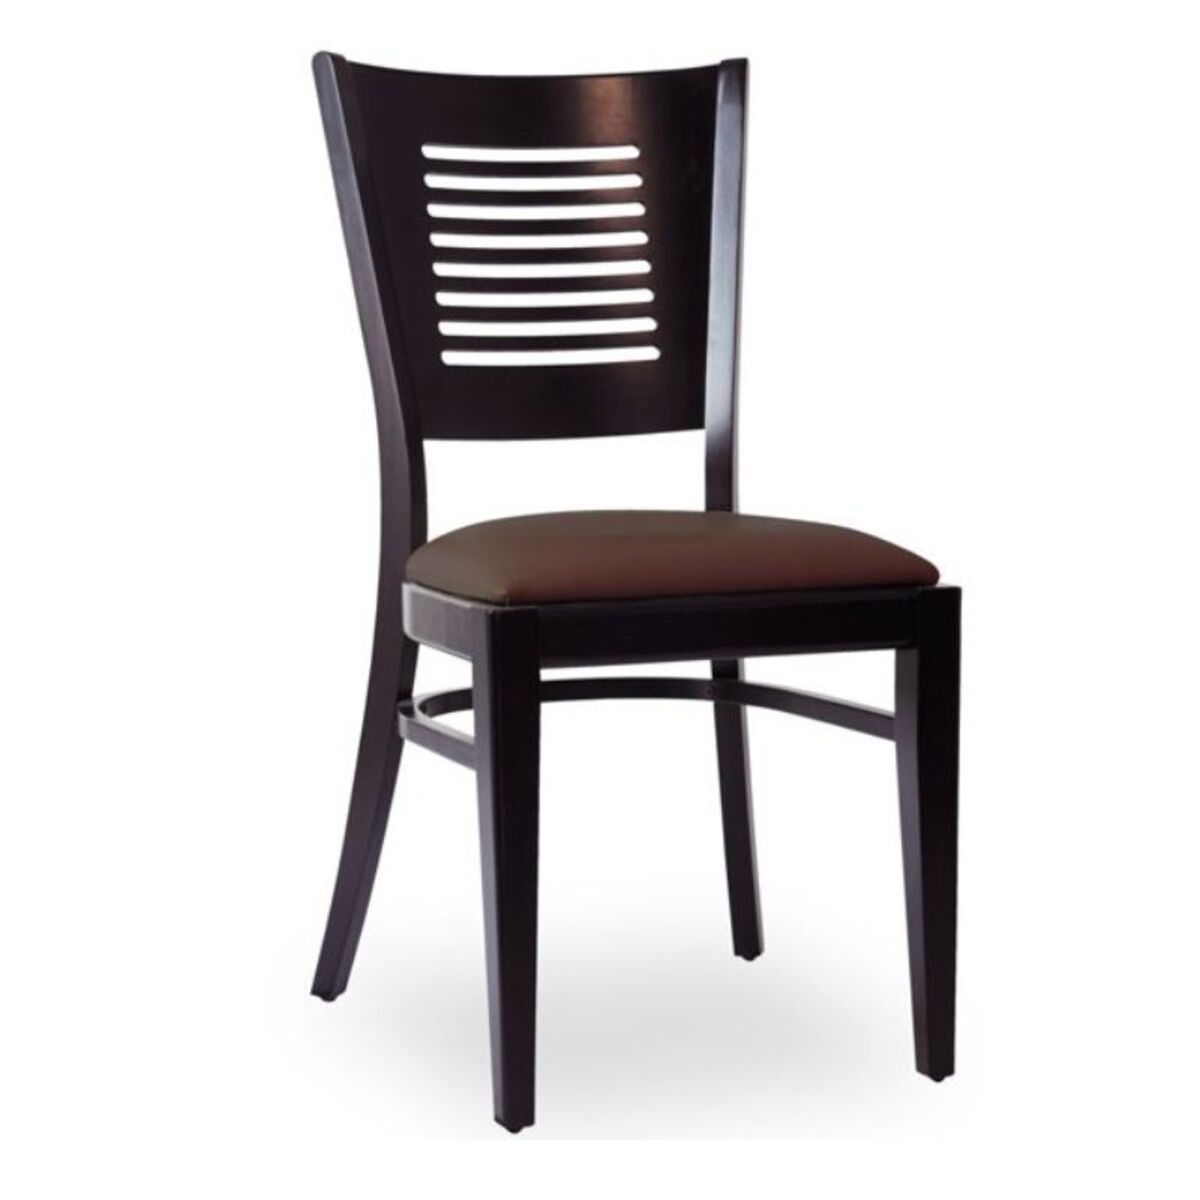 Chaise d’intérieur en bois avec assise rembourré en simili cuir marron